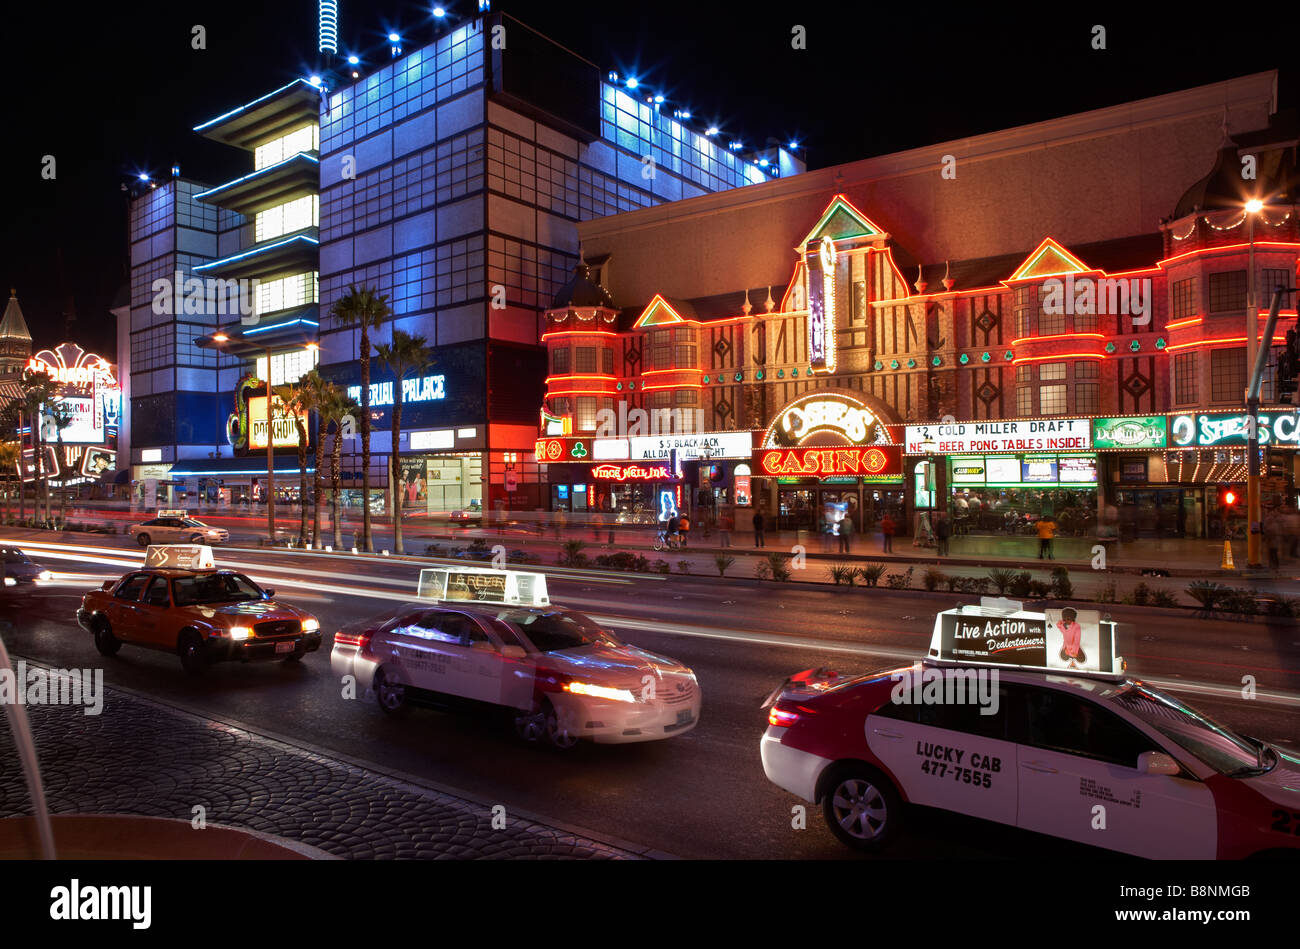 O'sheas casino - The Strip - Night Scene - Las Vegas Stock Photo